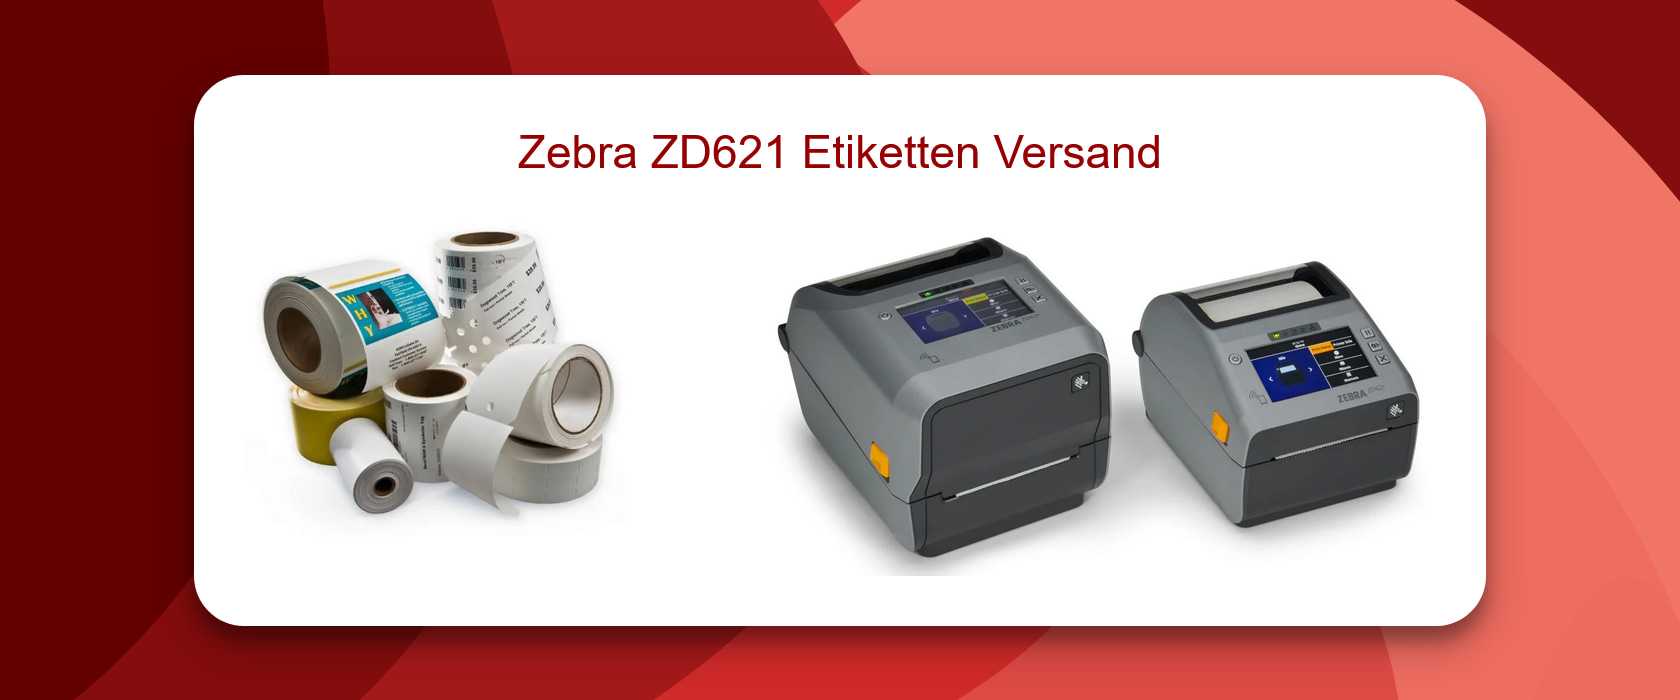 Zebra ZD621 Etiketten